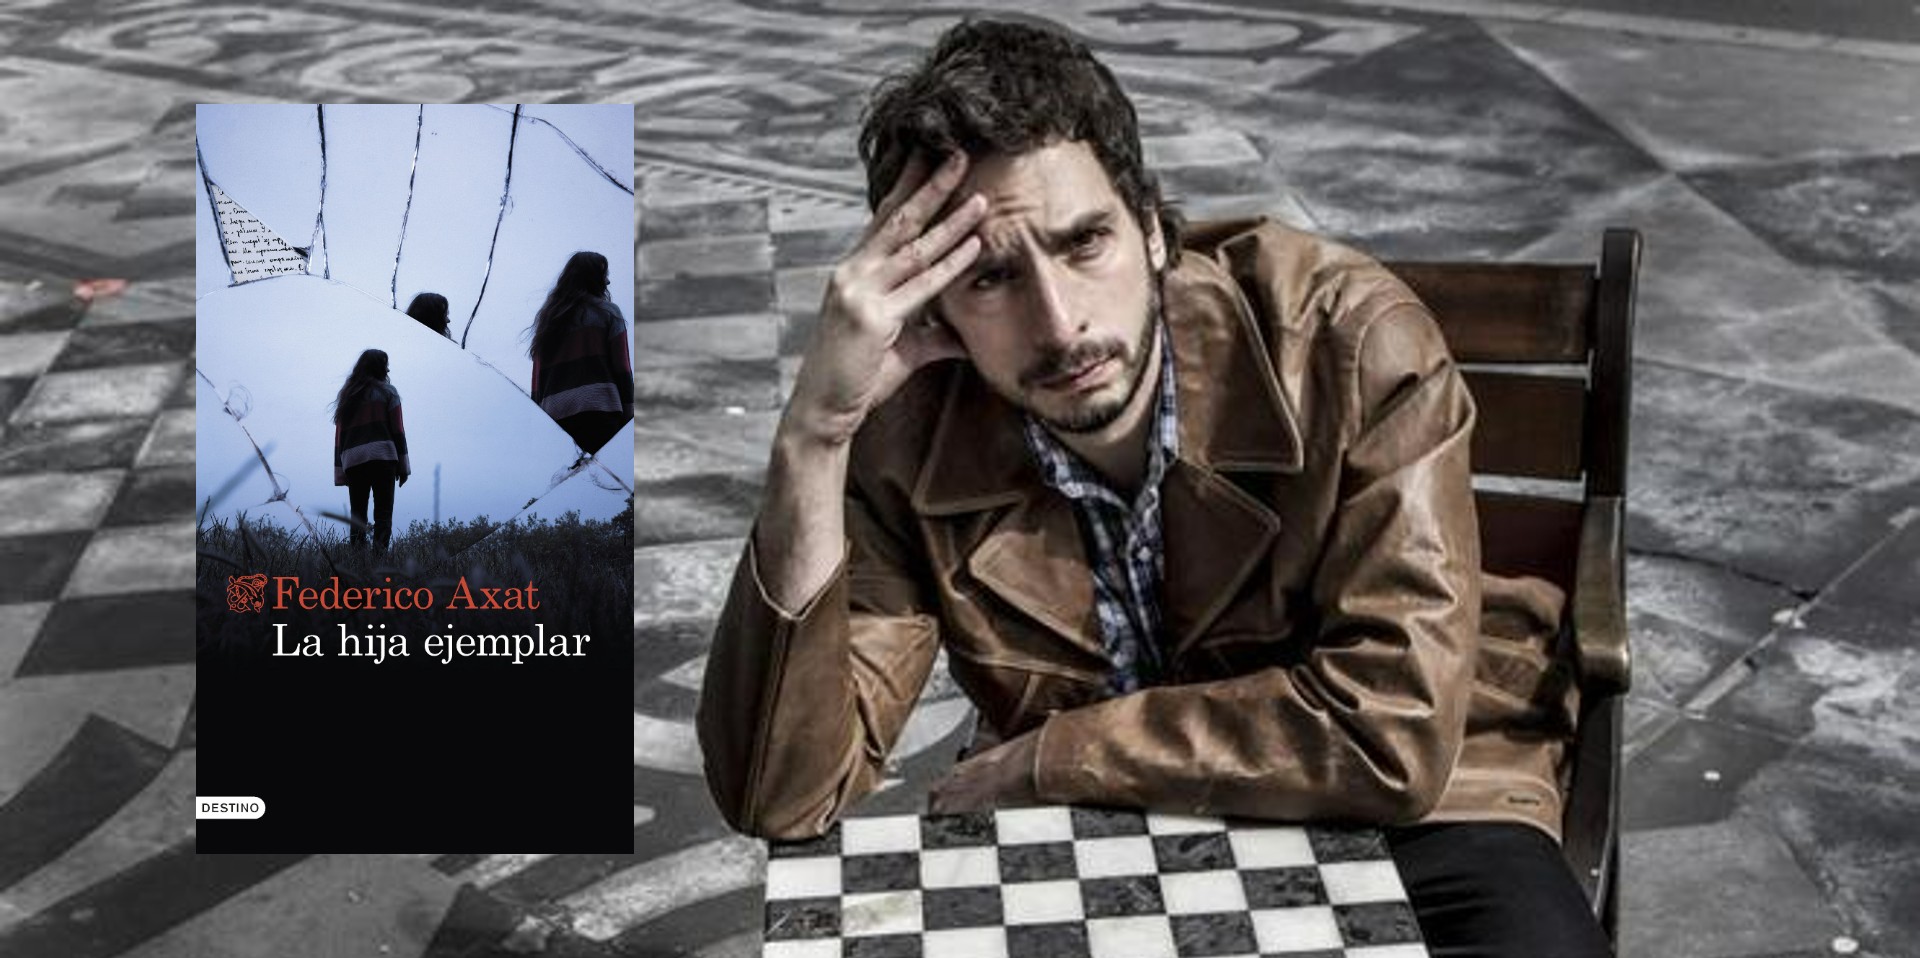 Federico Axat, el gran autor del thriller psicológico, regresa a librerías con “La hija ejemplar”.